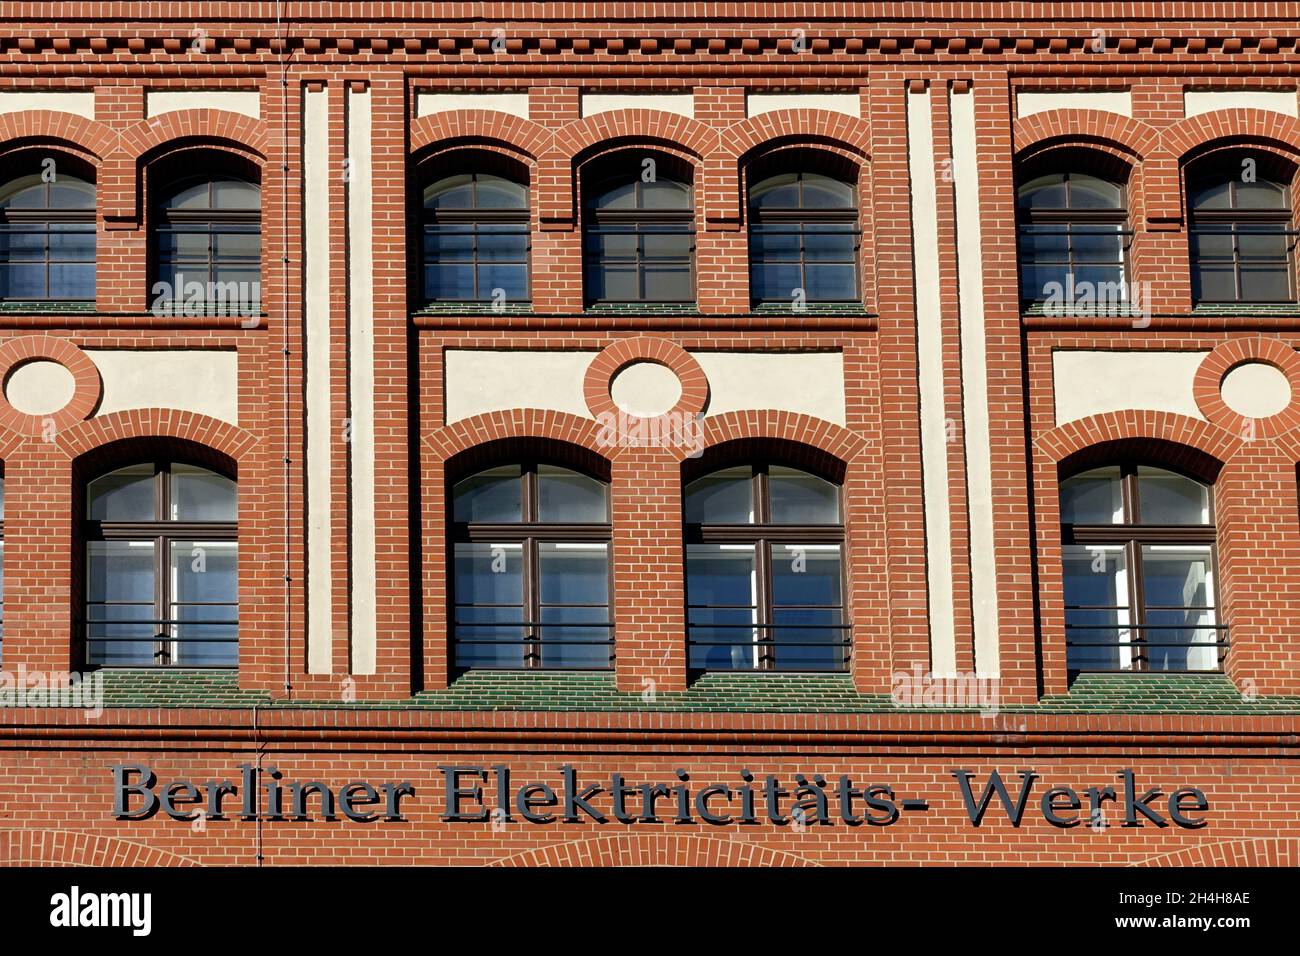 Berliner Elektrizitaetswerke, Auguststrasse, Berlin, Germany Stock Photo